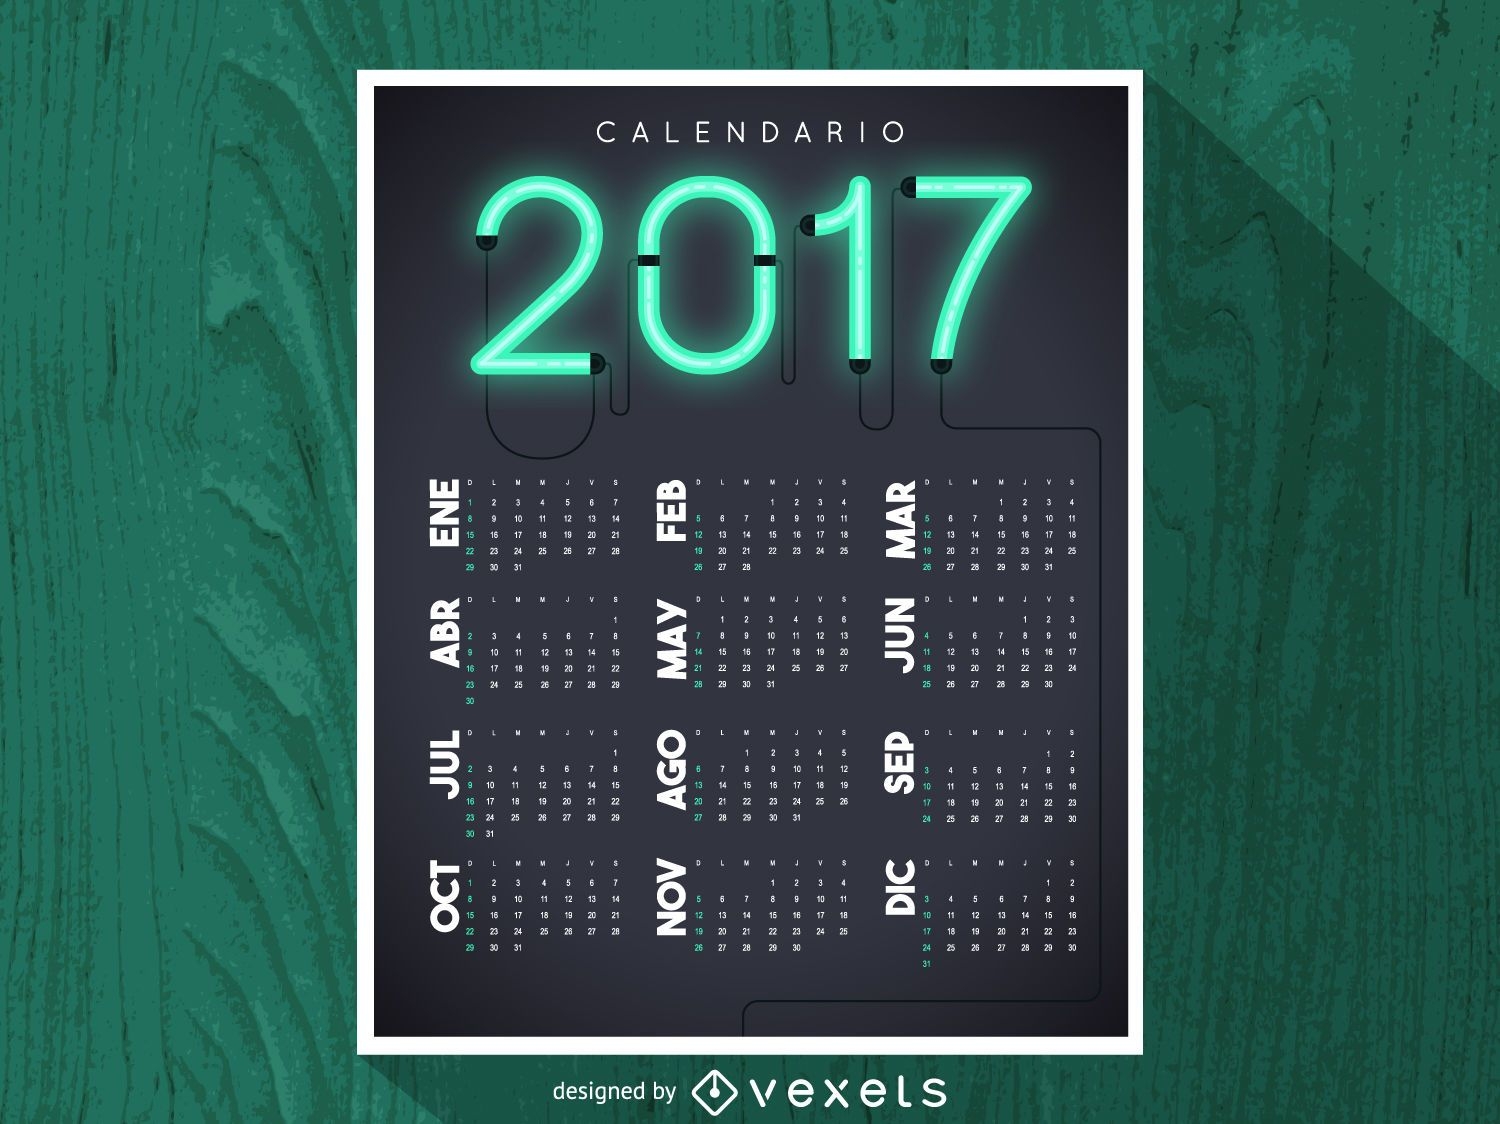 2017 neon calendar in Spanish